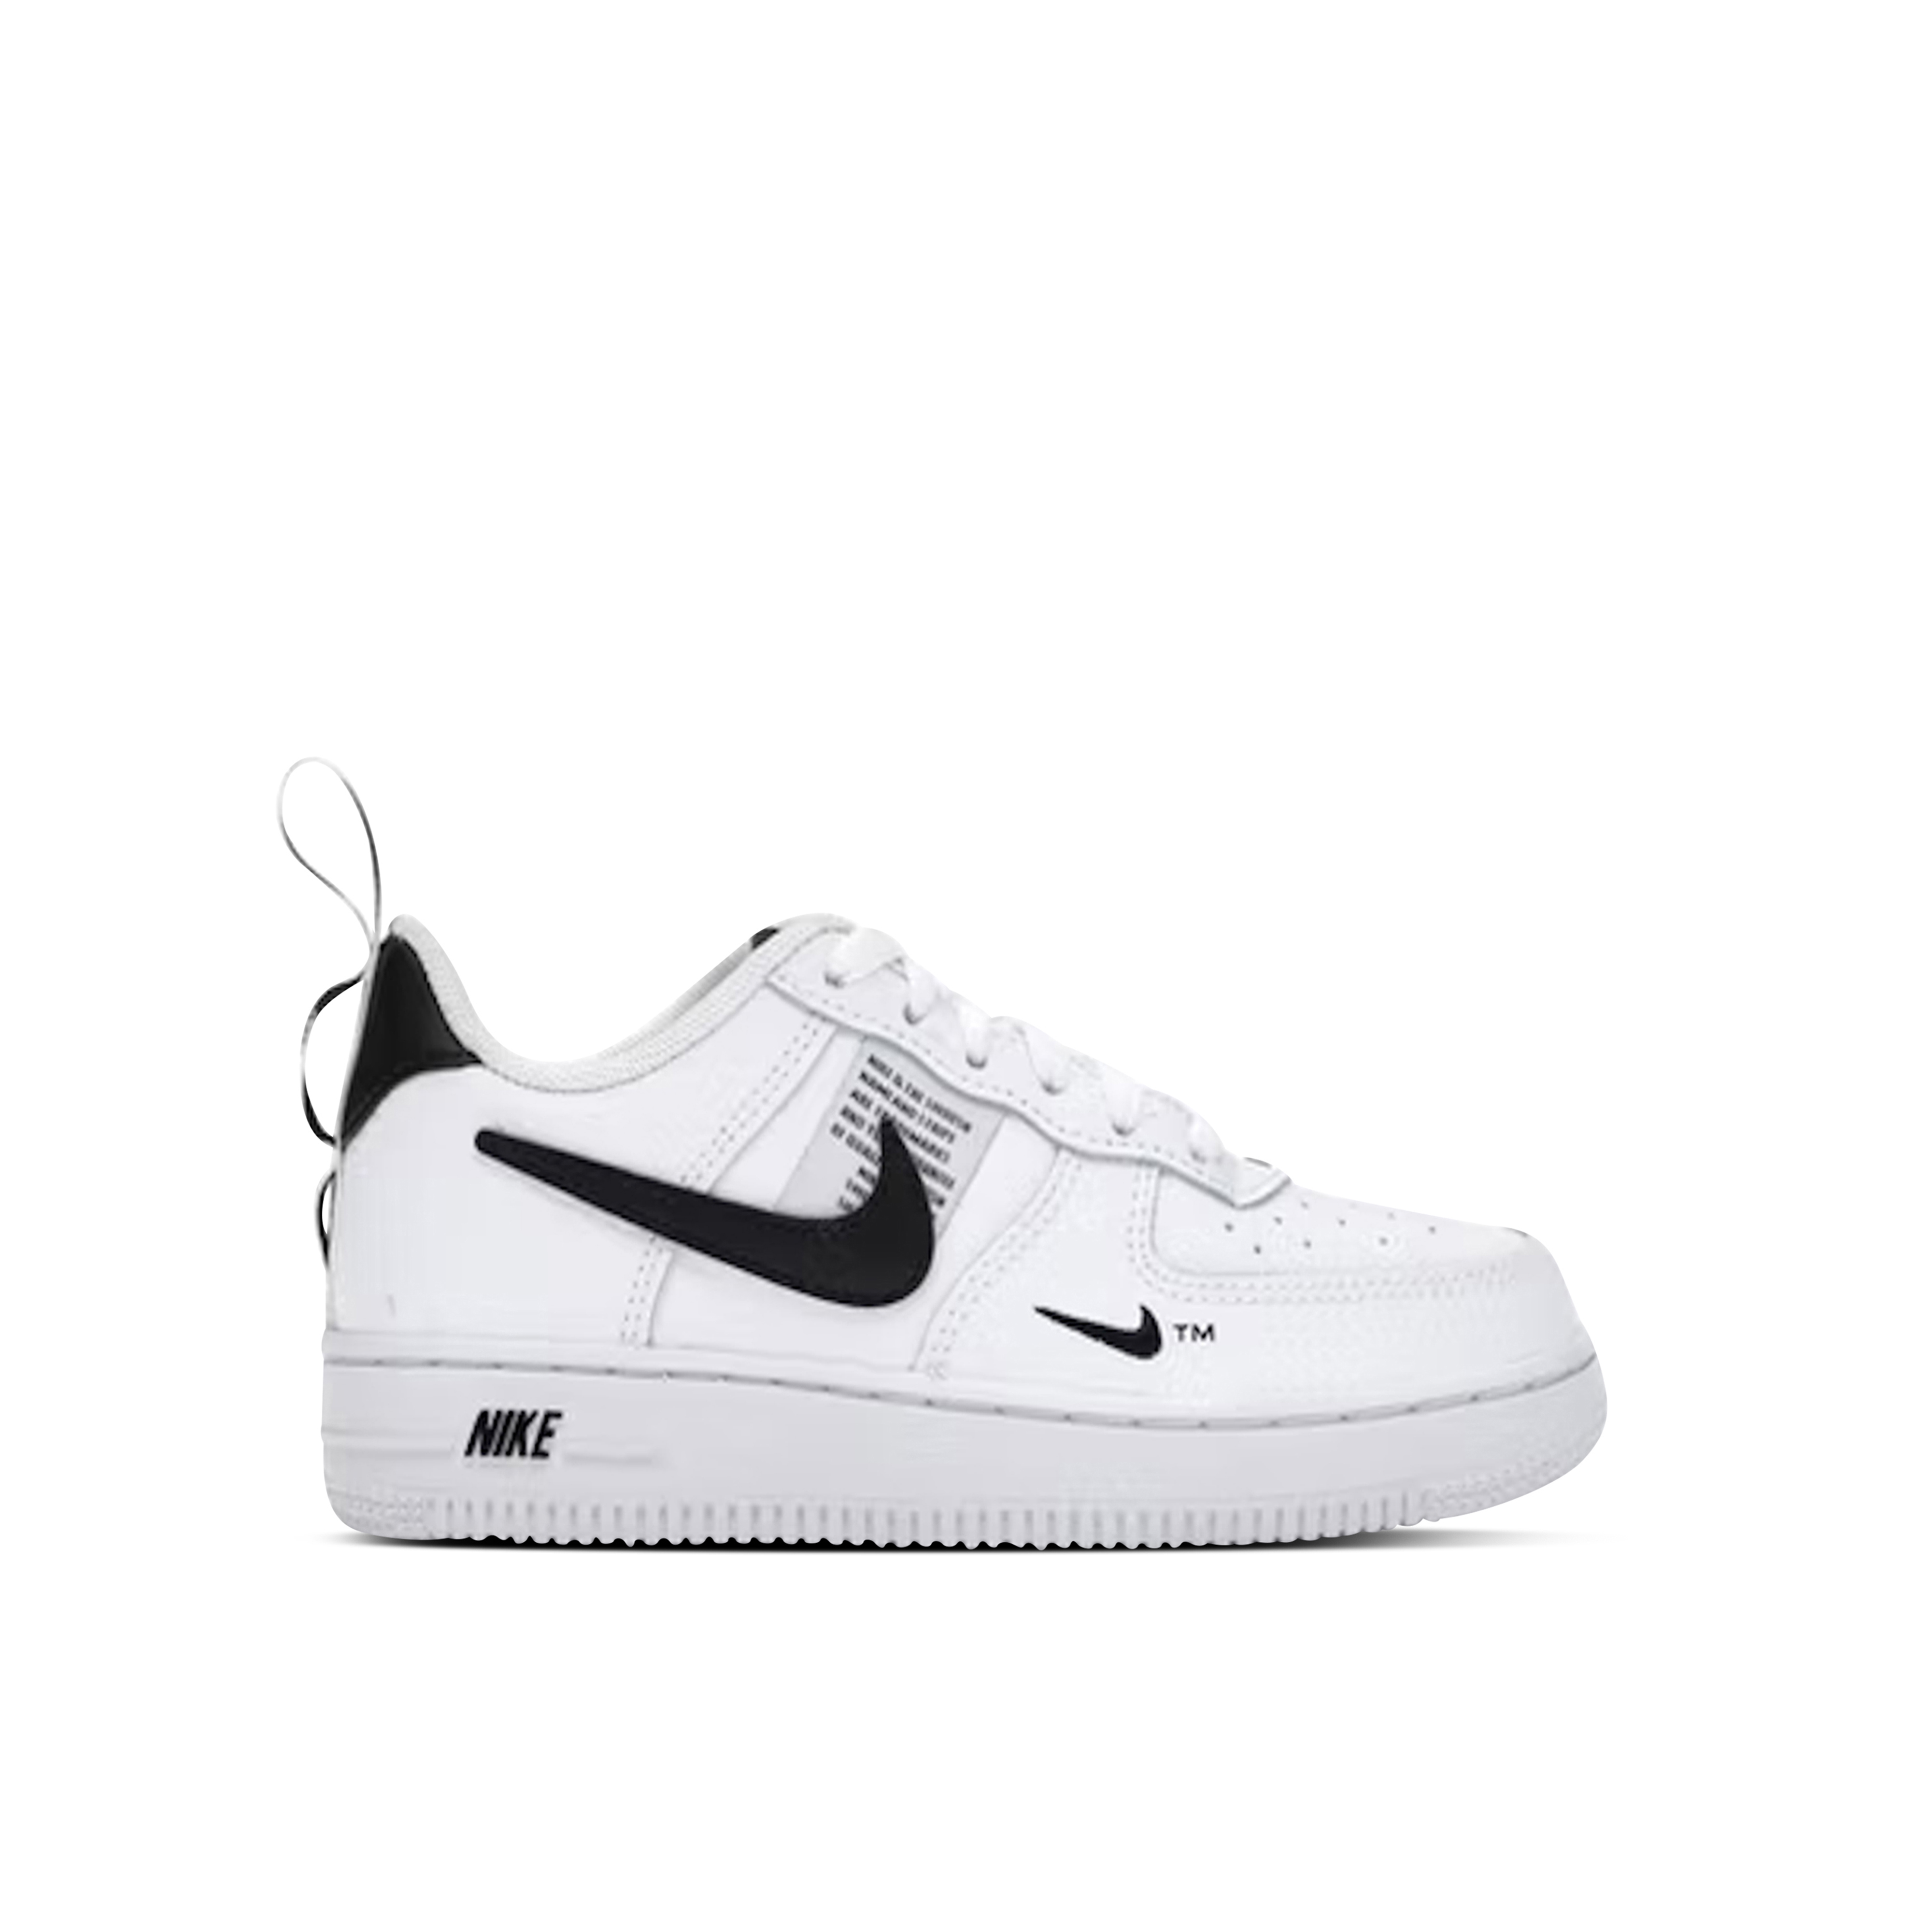 Nike Air Force 1 LV8 Utility White Black PS Sizes Boys Girls Kids AV4272  100 NEW